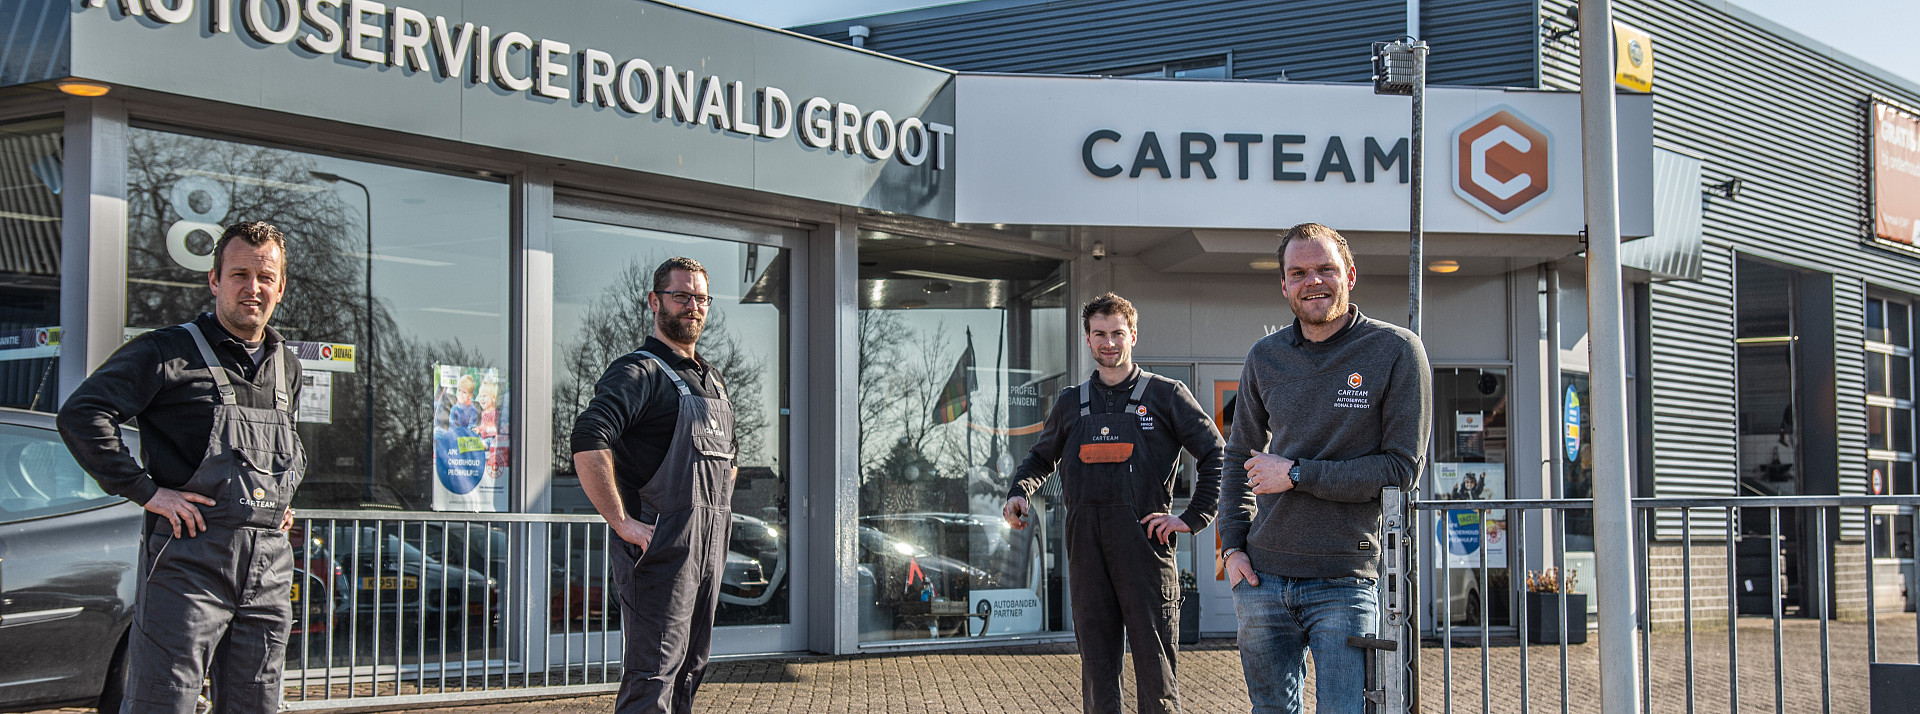 Carteam Autoservice Ronald Groot